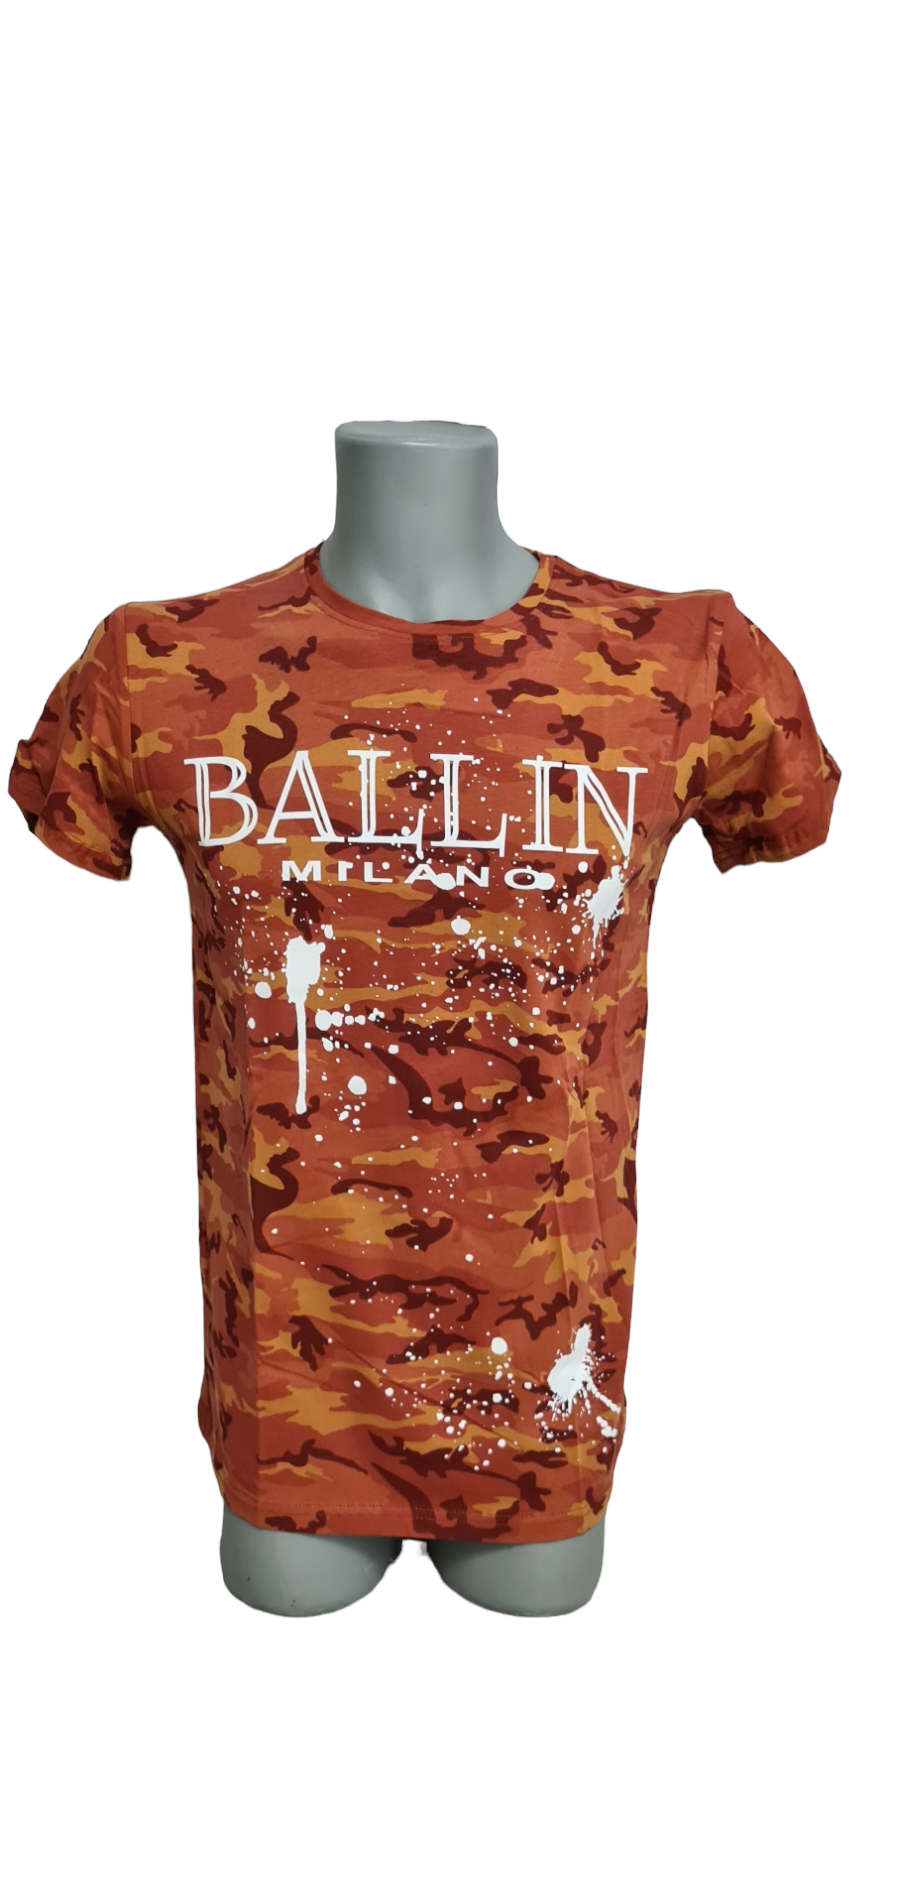 Ballin Milano Herren T-Shirt